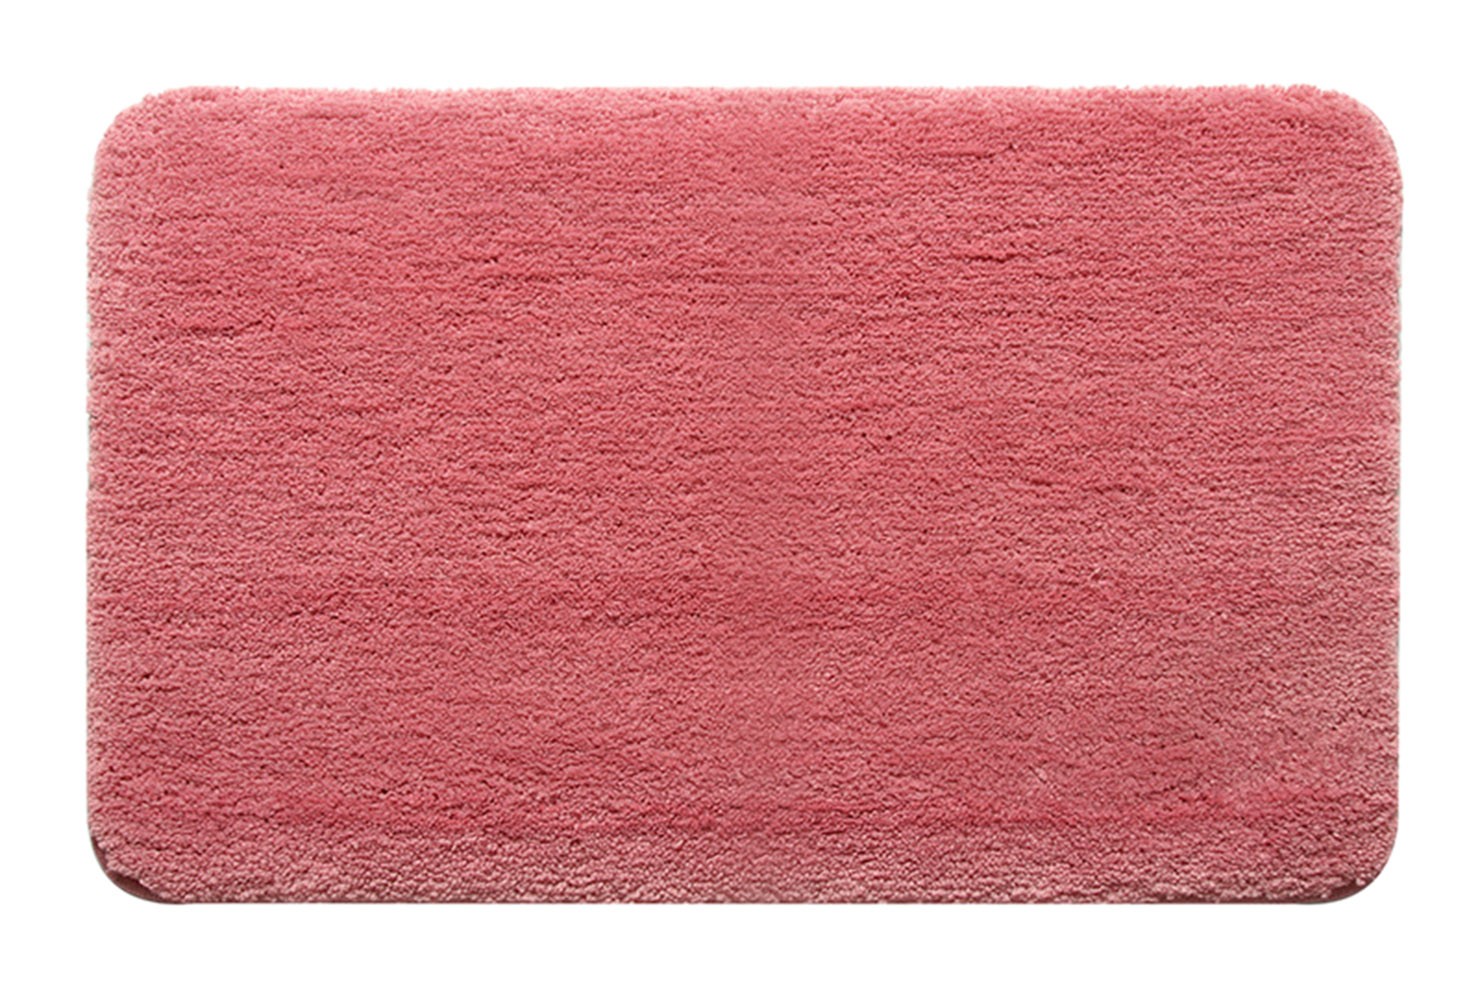 [Solid] Home Decor Rug Bathroom/Living Room Doormat Indoor/Outdoor Mat,Pink,17.72x27.56 inches